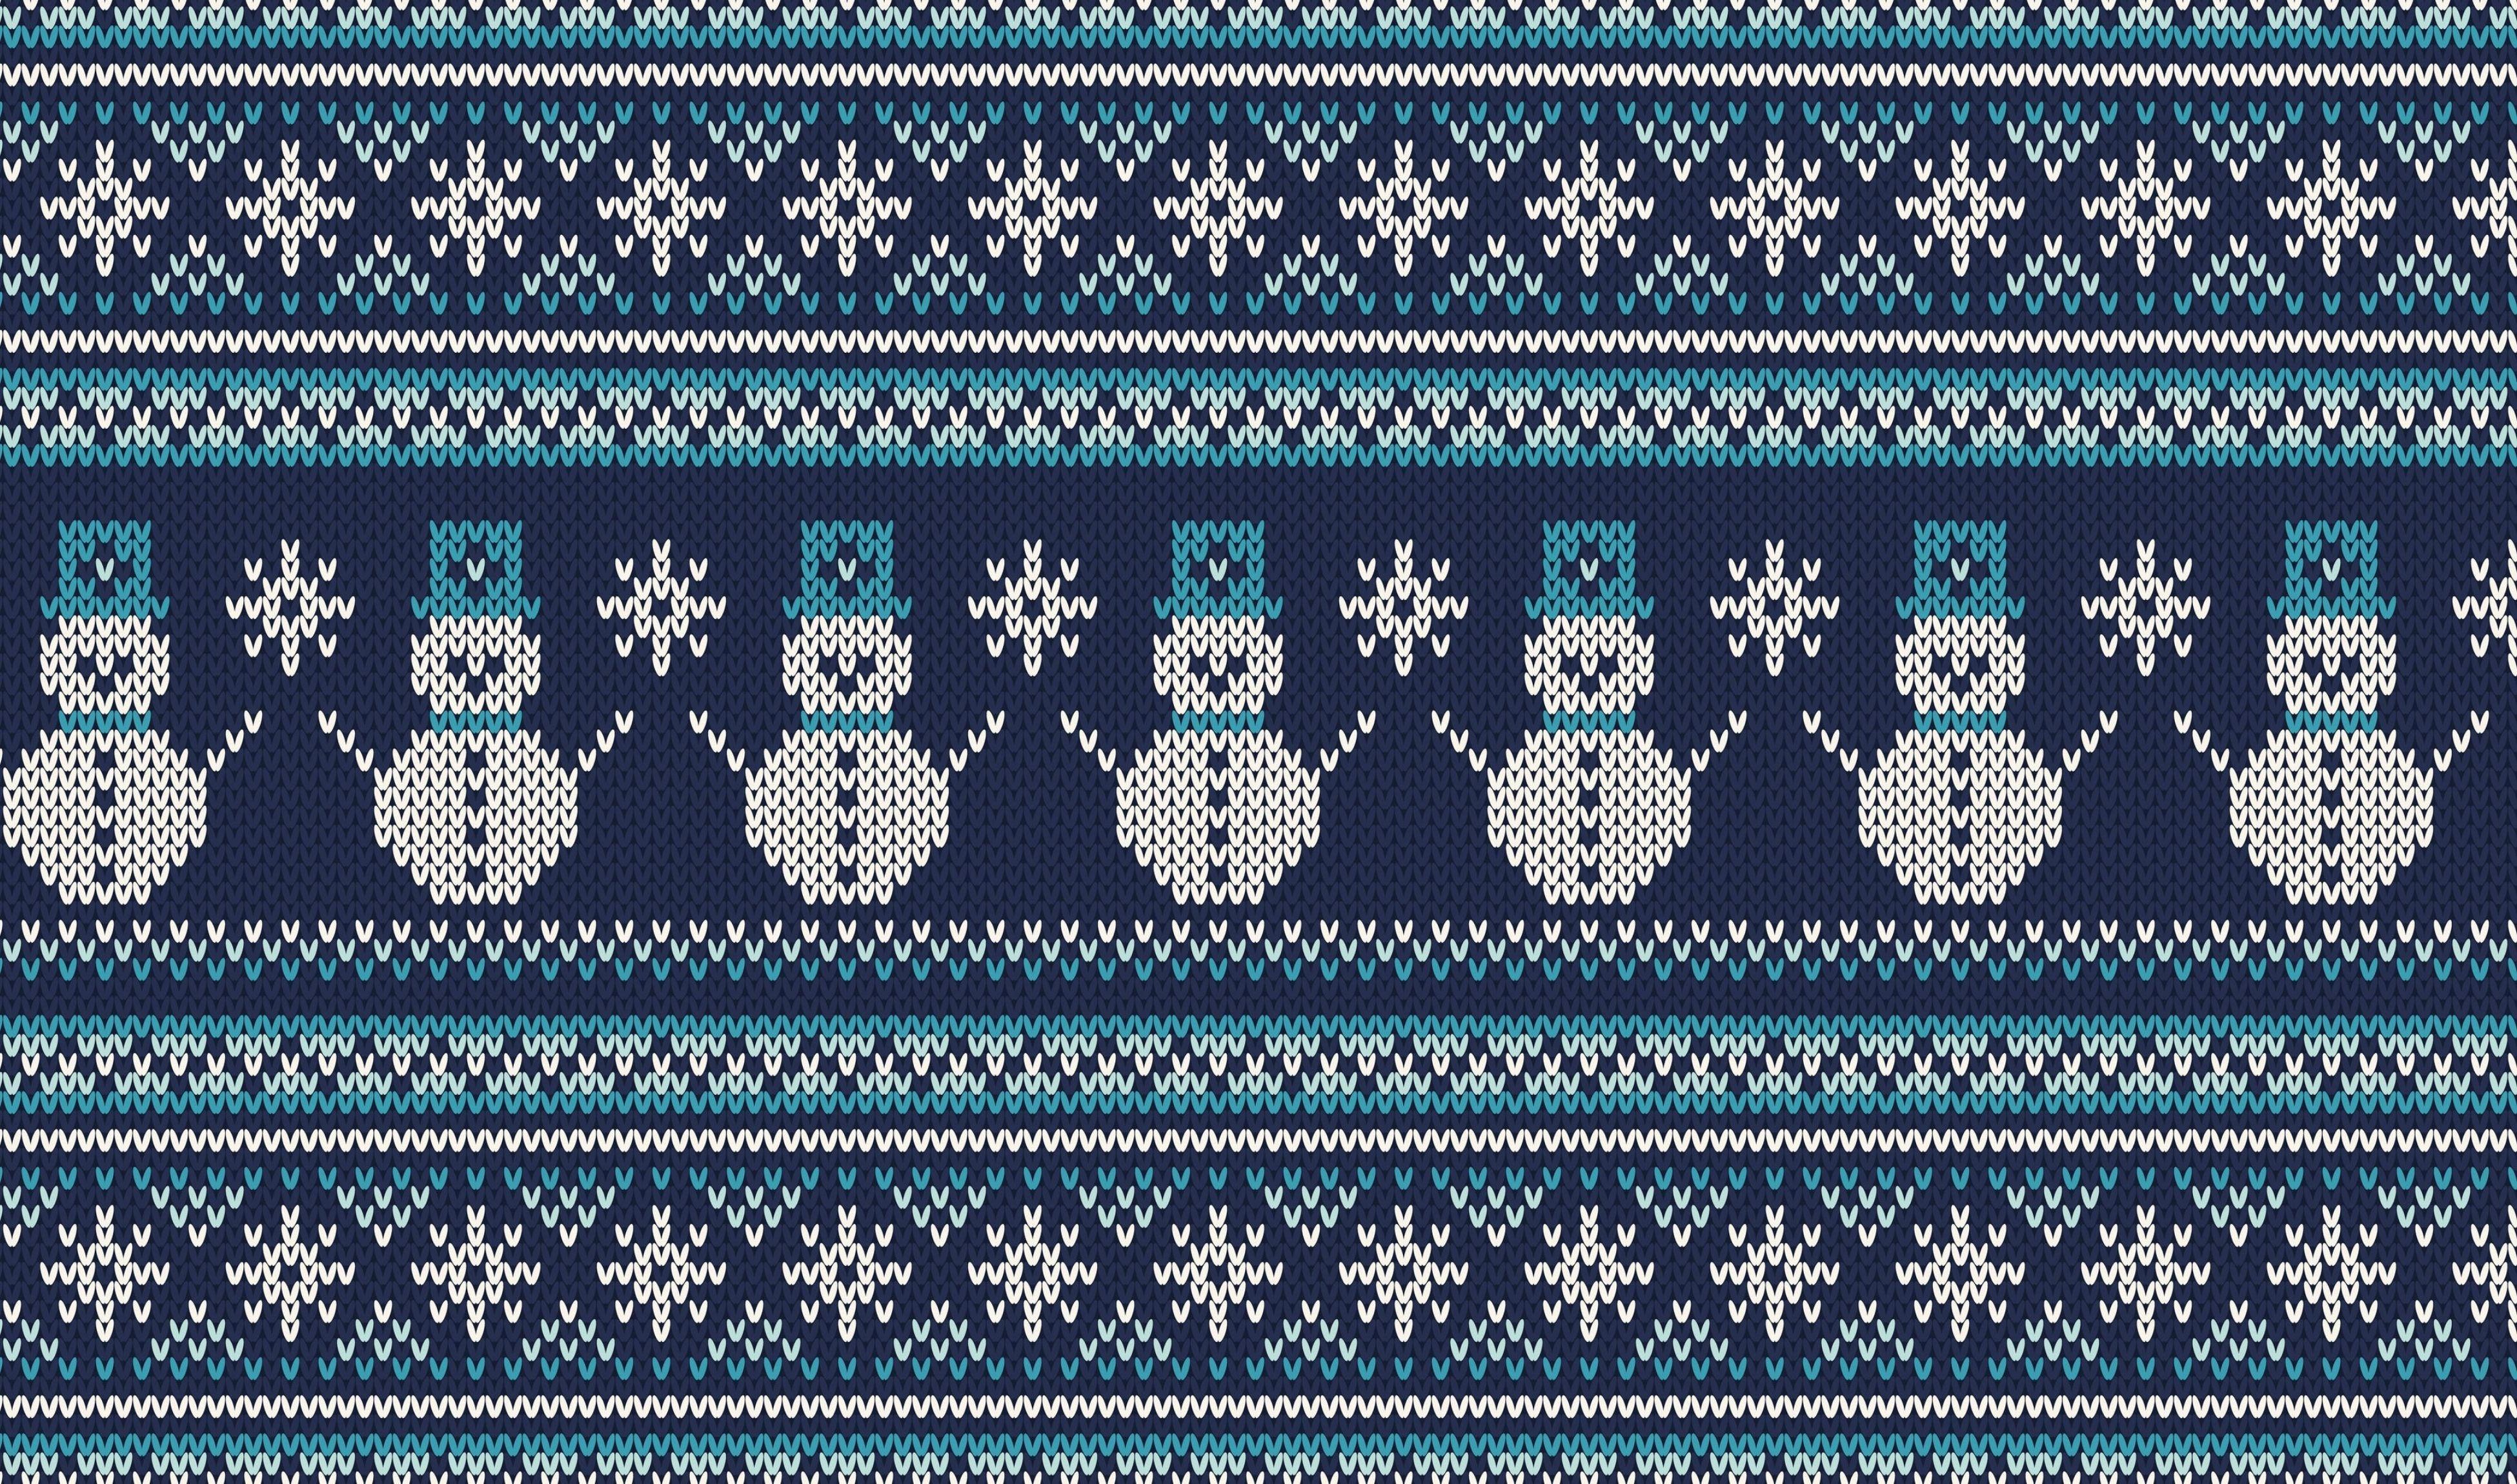 Snowman Sweater Knit Print Heat Transfer Vinyl and Carrier Sheet